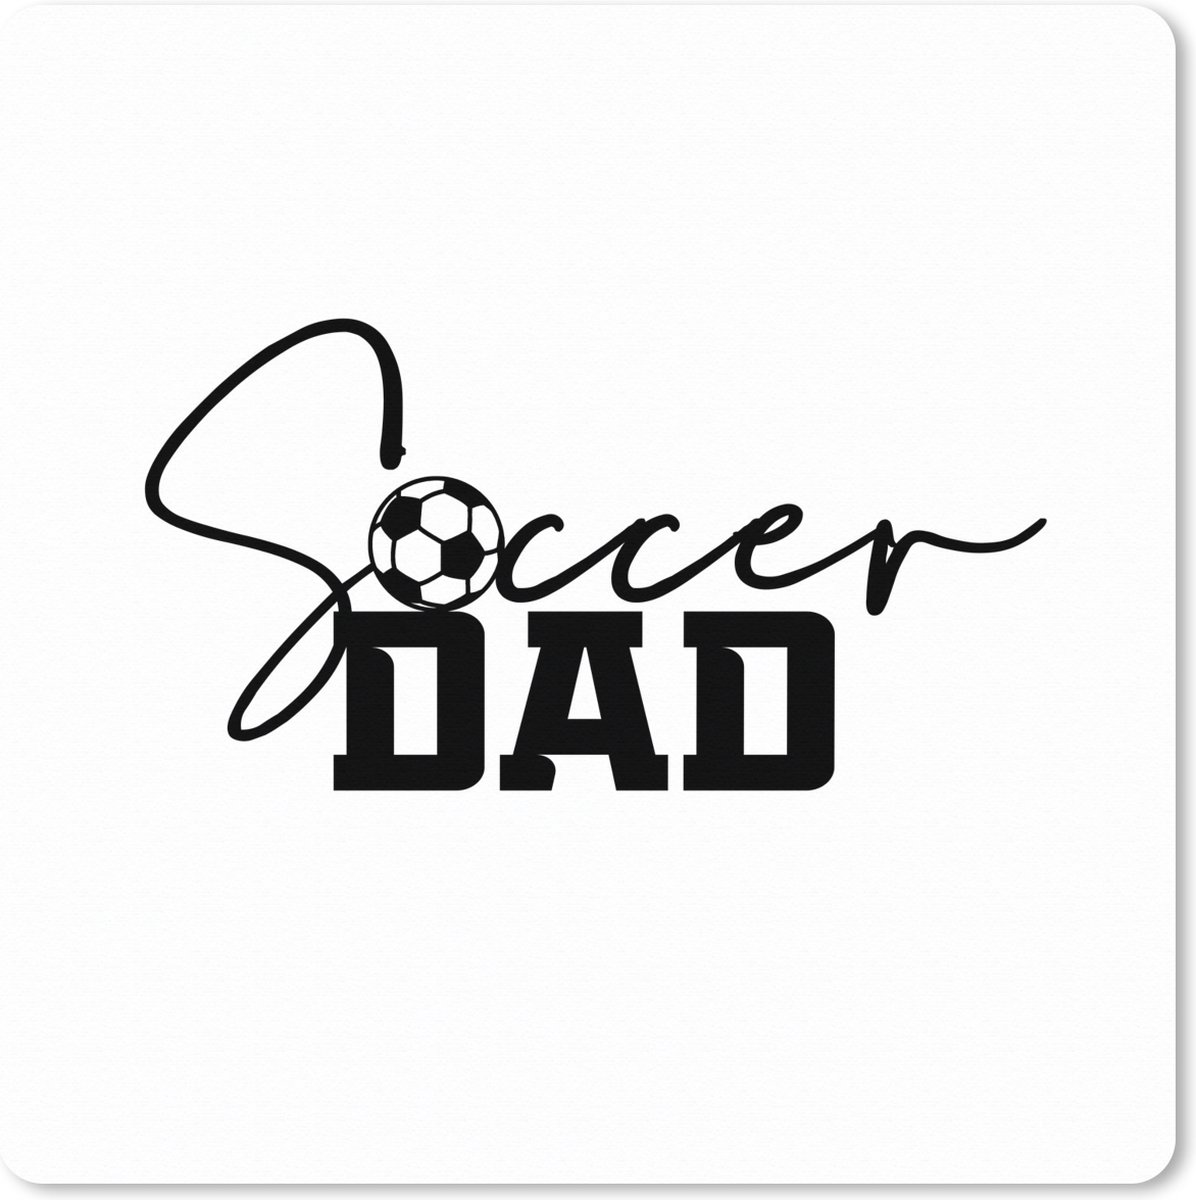 Muismat XXL - Bureau onderlegger - Bureau mat - Spreuken - Quotes - Soccer dad - Vader - Voetbal - 60x60 cm - XXL muismat